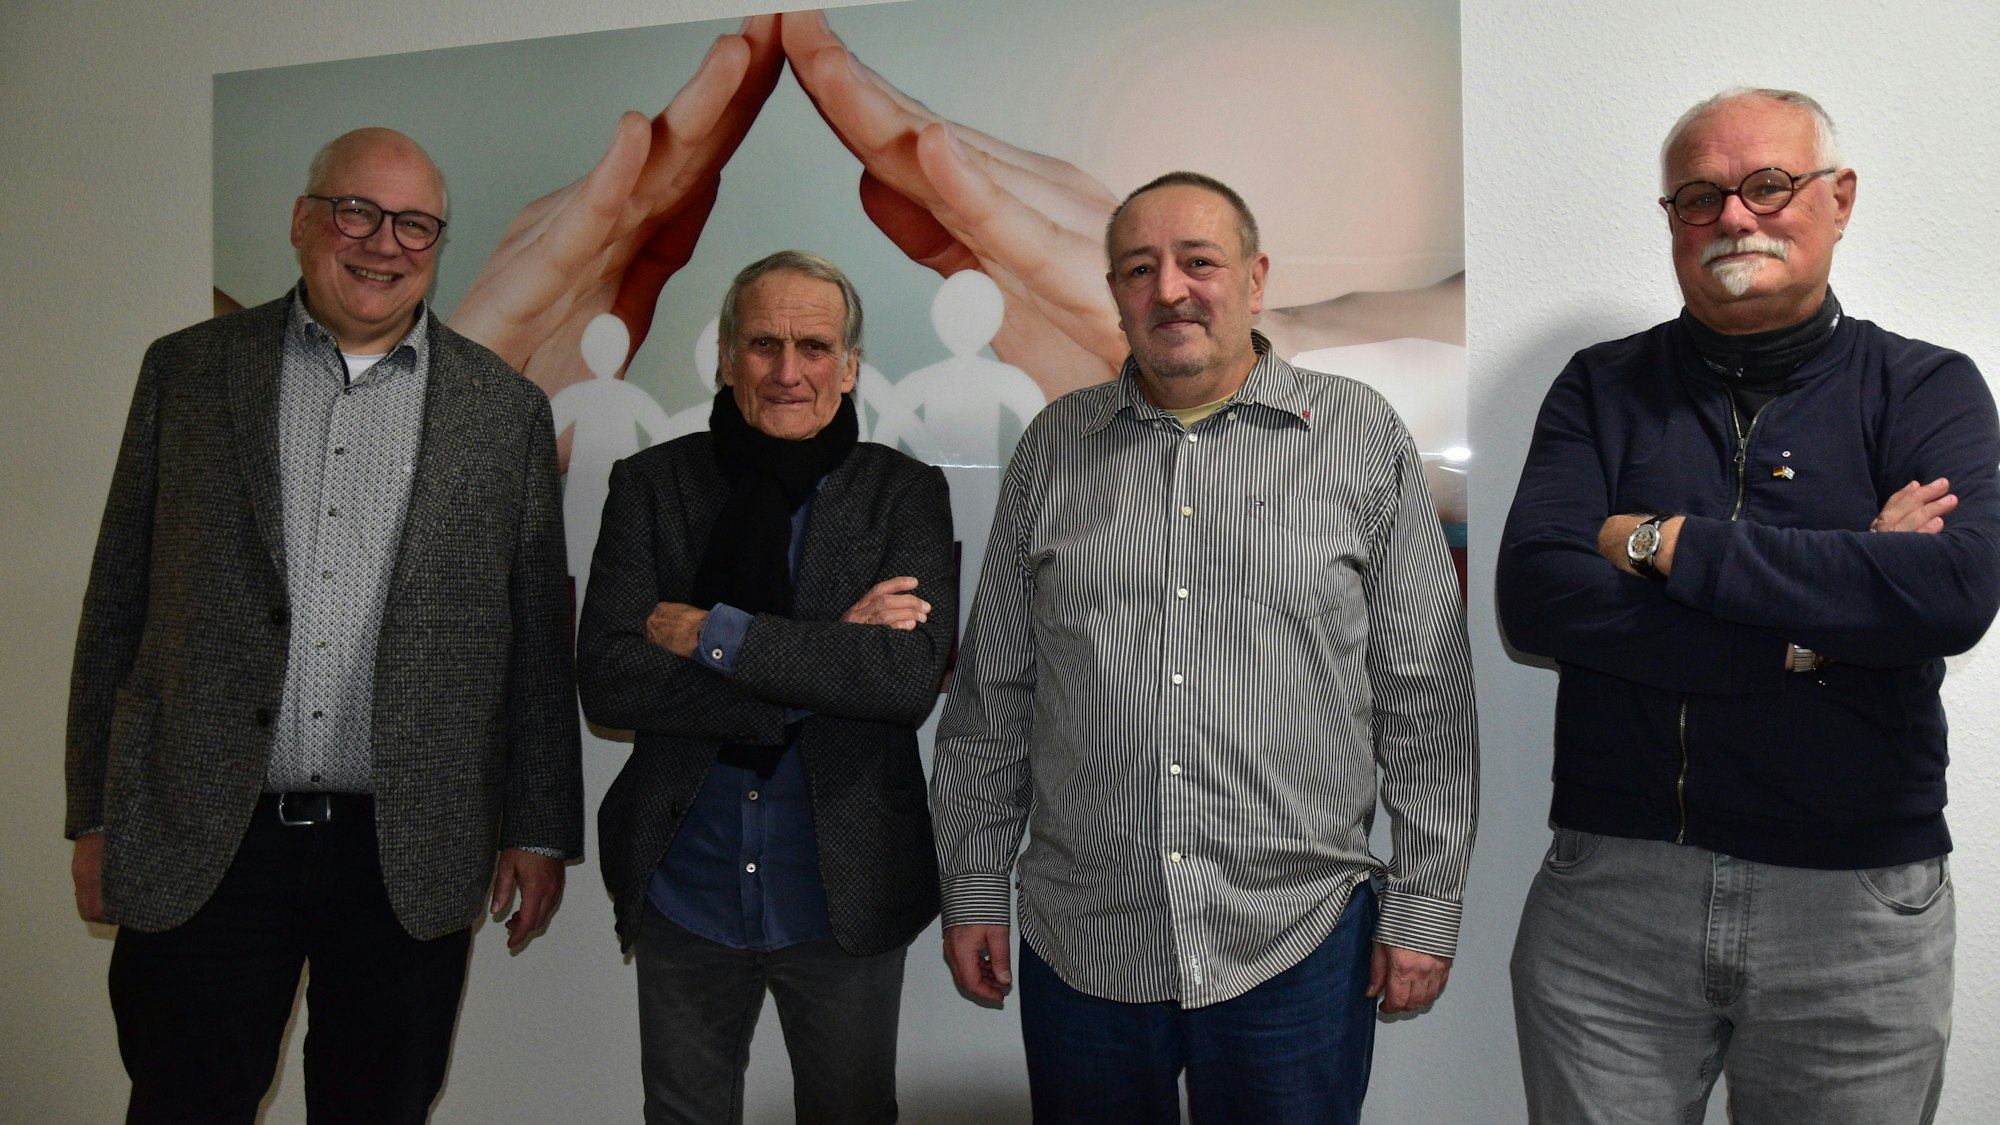 Pressegespräch zur Weihnachstfeier. Von links nach rechts: Markus Kühn, Wolfgang Overath, Ralf Joecken, Bert Becker.